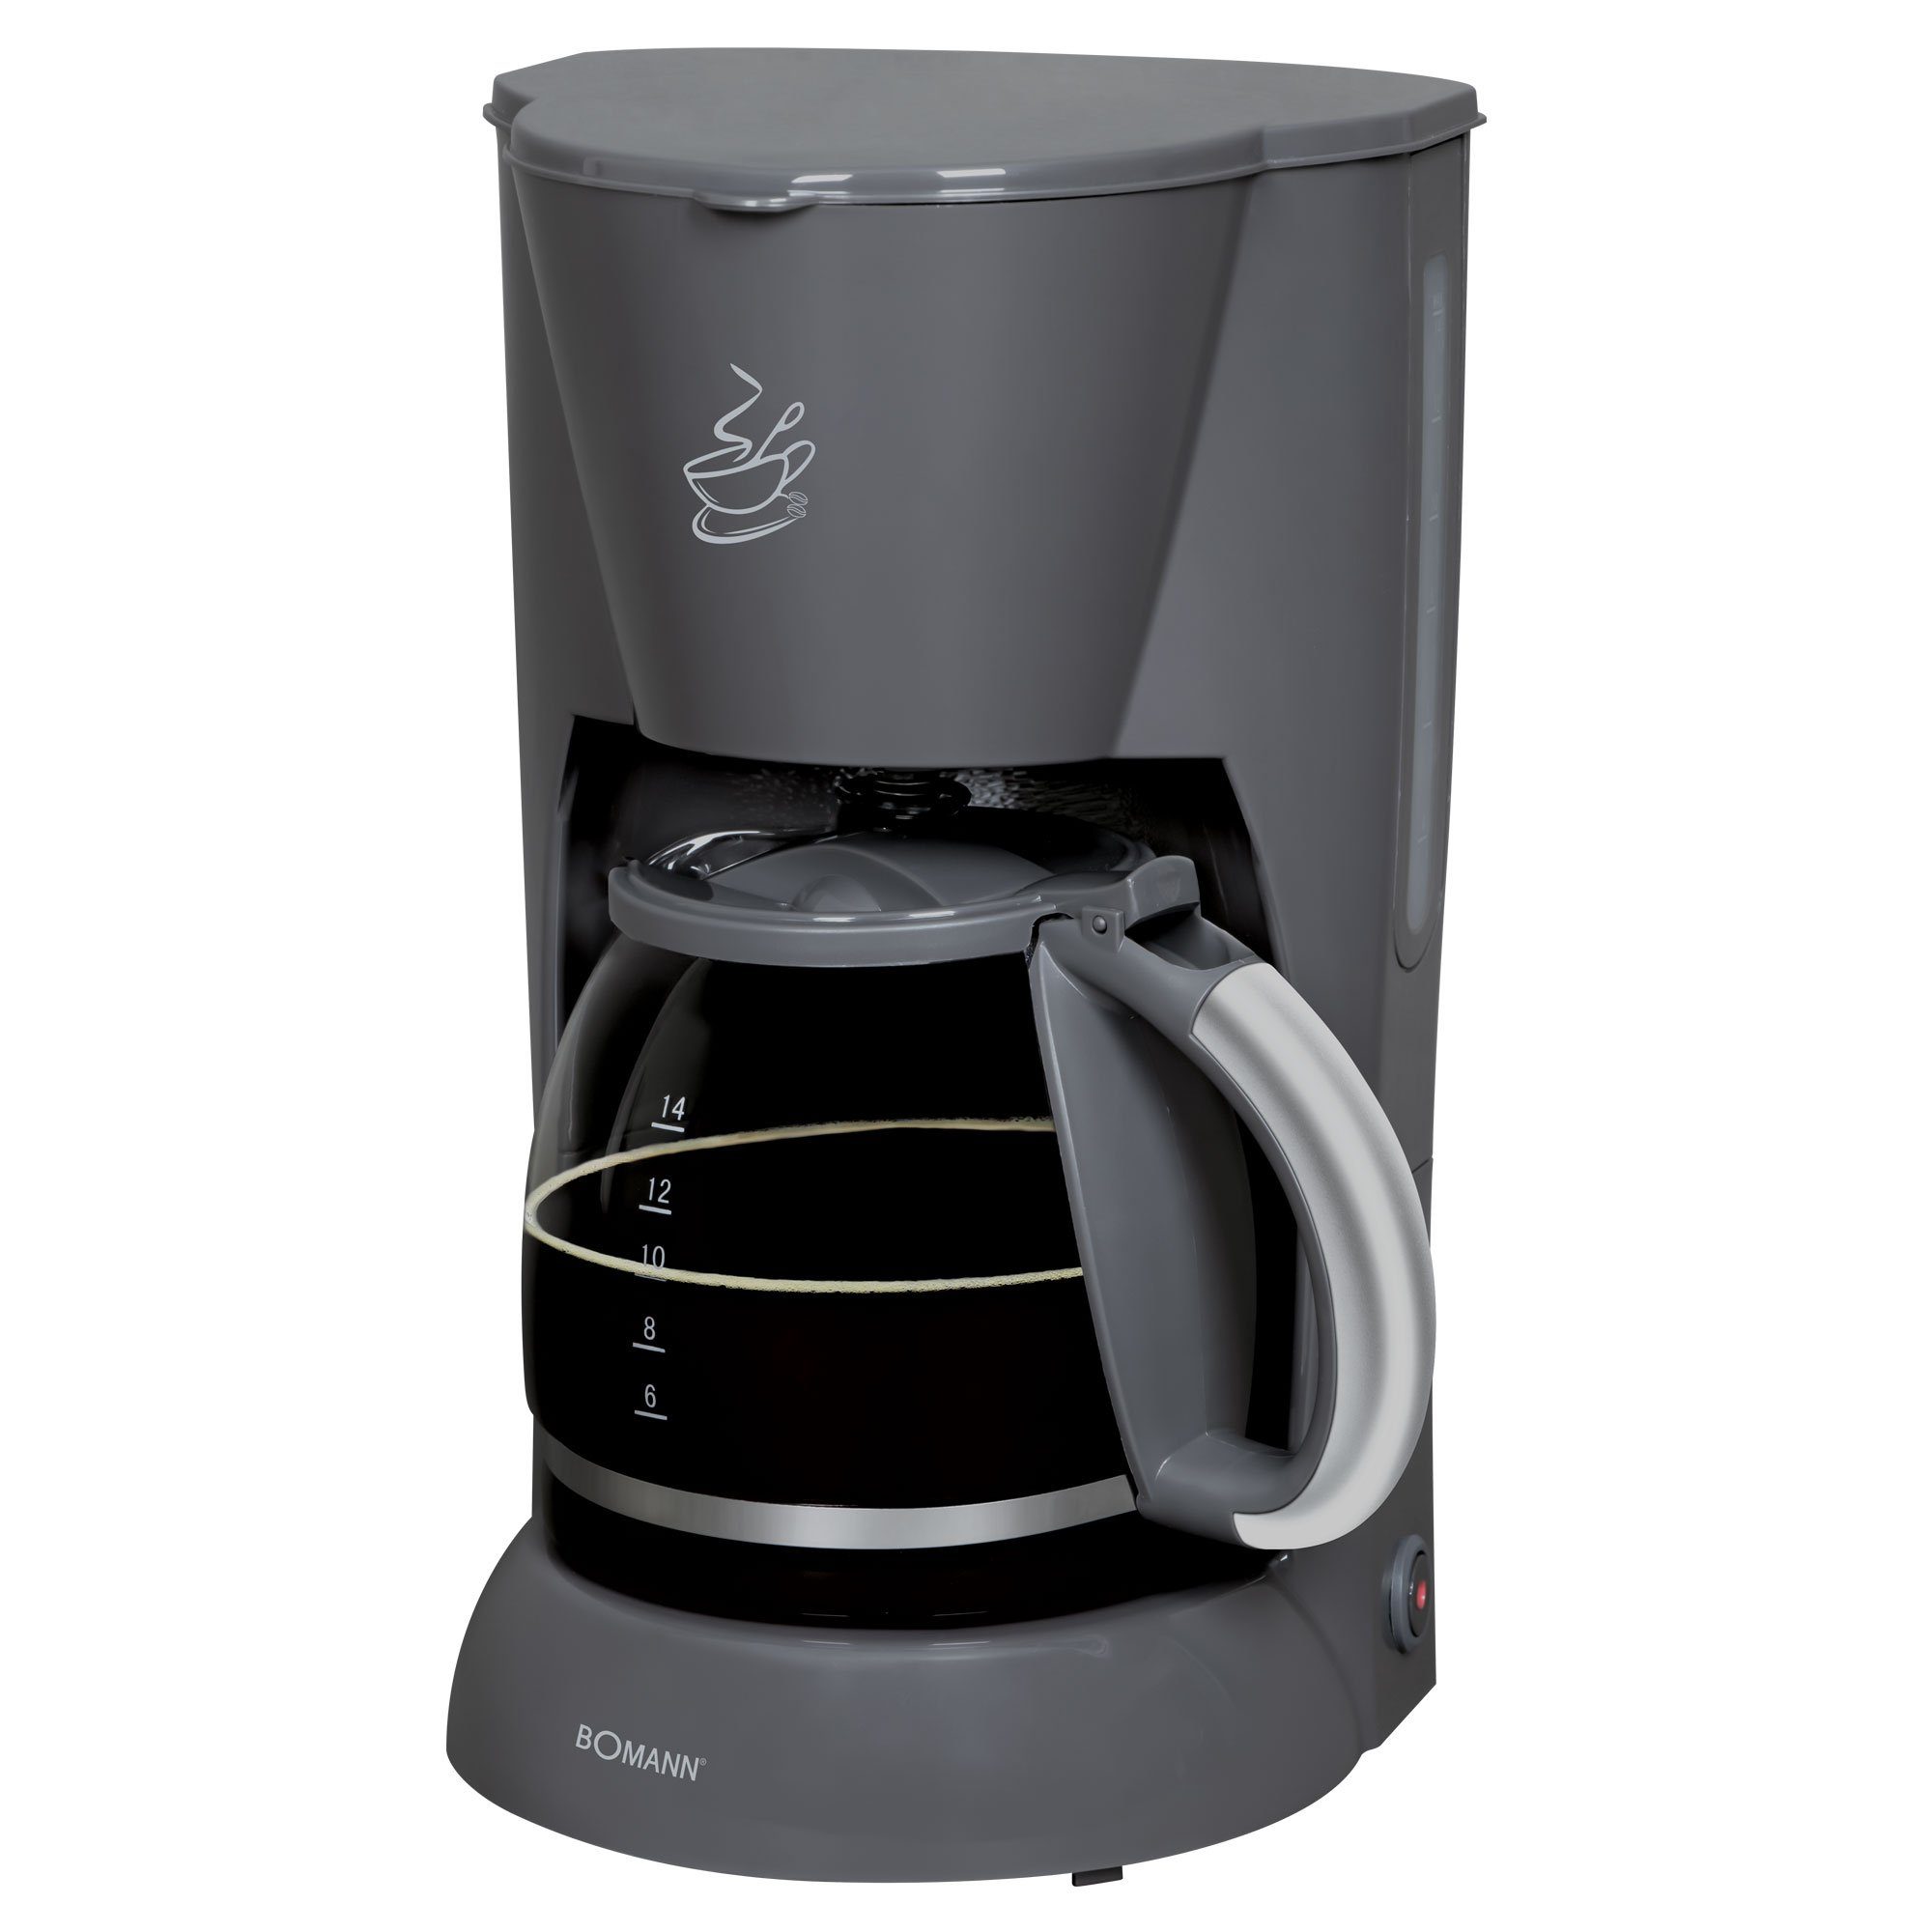 BOMANN Filterkaffeemaschine Kaffeeautomat KA 183 CB Grau, Wasserstandsanzeige (von außen ablesbar), Nachtropfsicherung